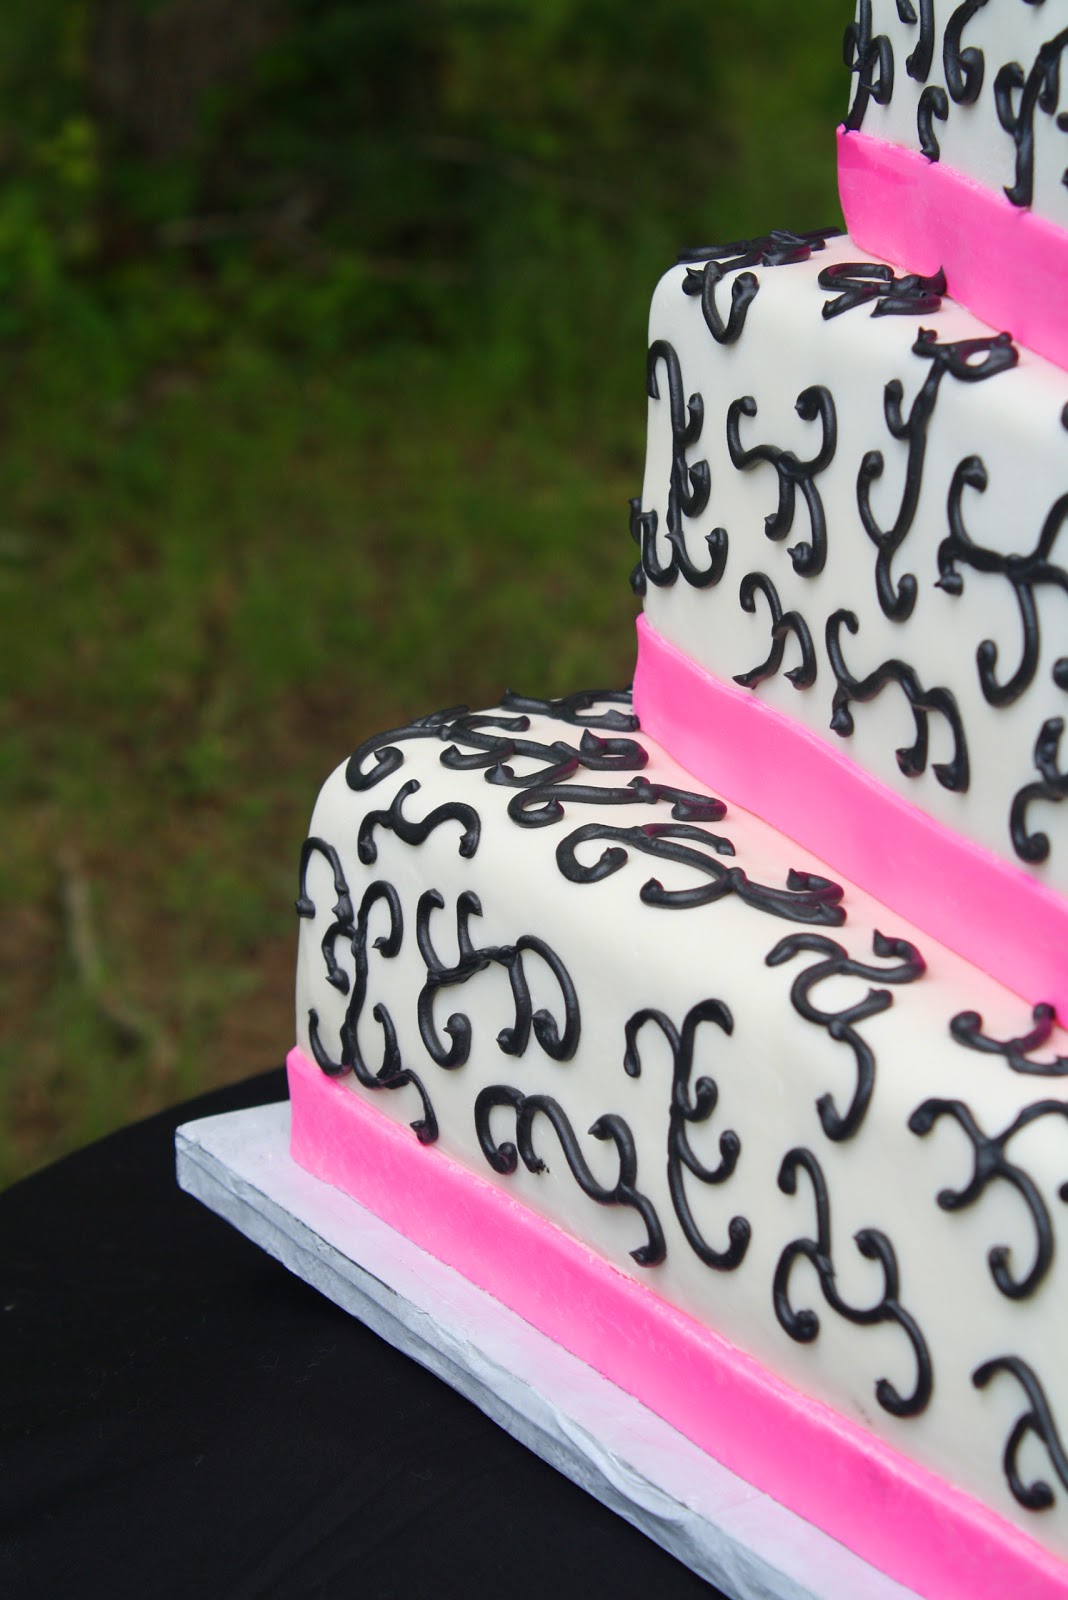 Hot Pink & Black Wedding Cake